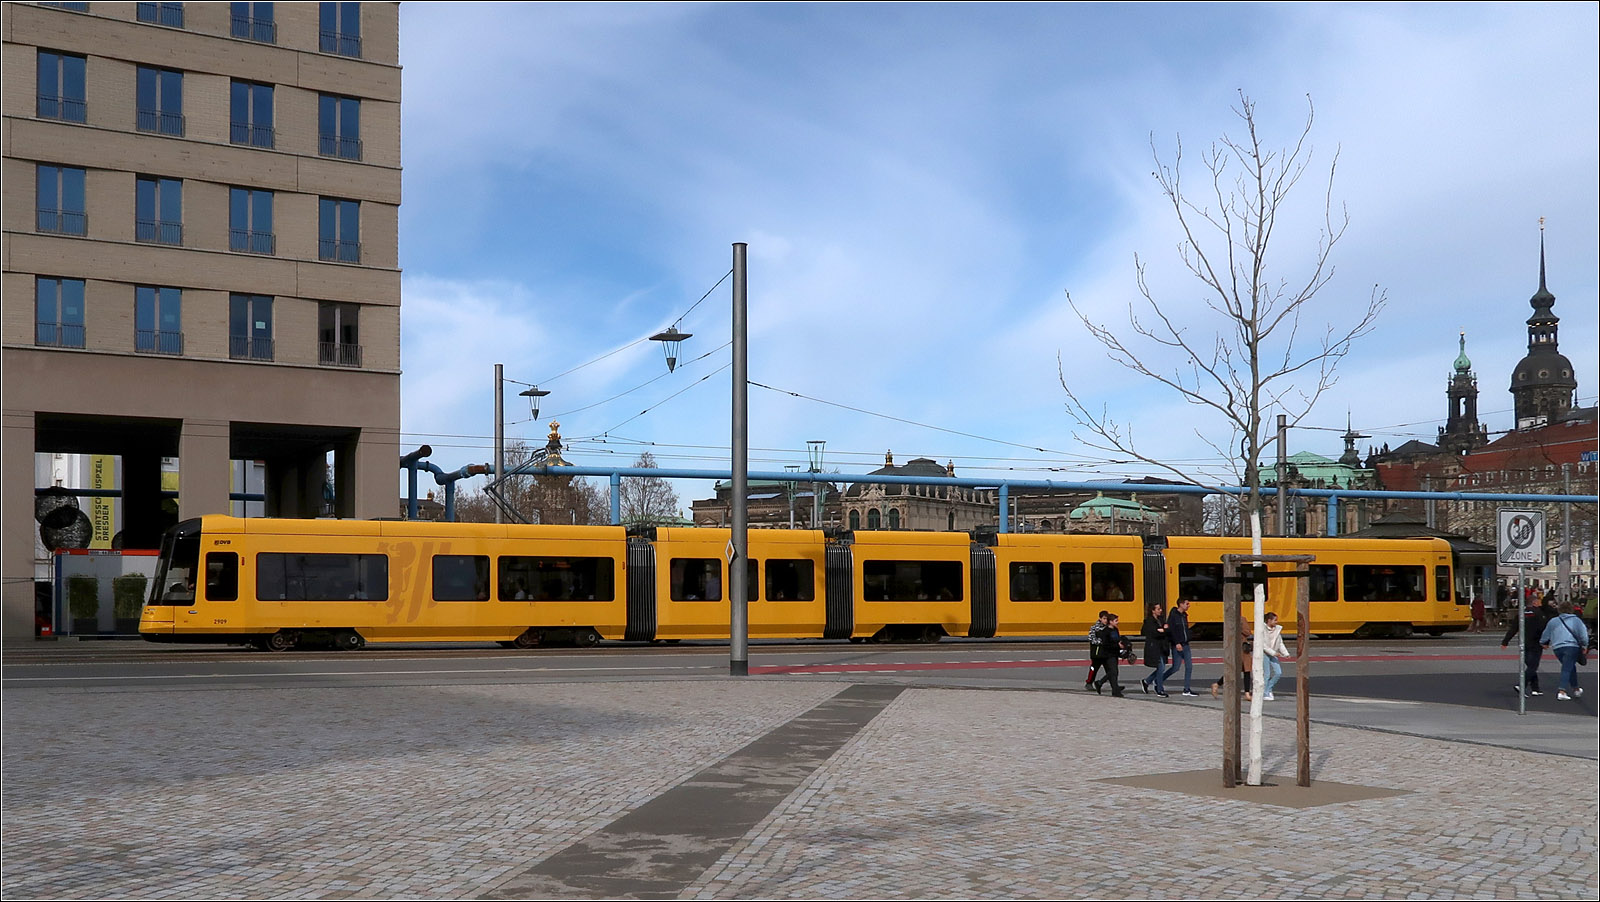 Eine neue Gelbe für Dresden - 

Der NGT DXDD Wagen 2909 im Bereich des Postplatzes, gesehen von der türlosen Seite. Die Seitenscheiben sind für eine Straßenbahn teilweise ungewöhnlich lang. Die Länge der Bahn beträgt 43,3 m.

22.03.2023 (M)